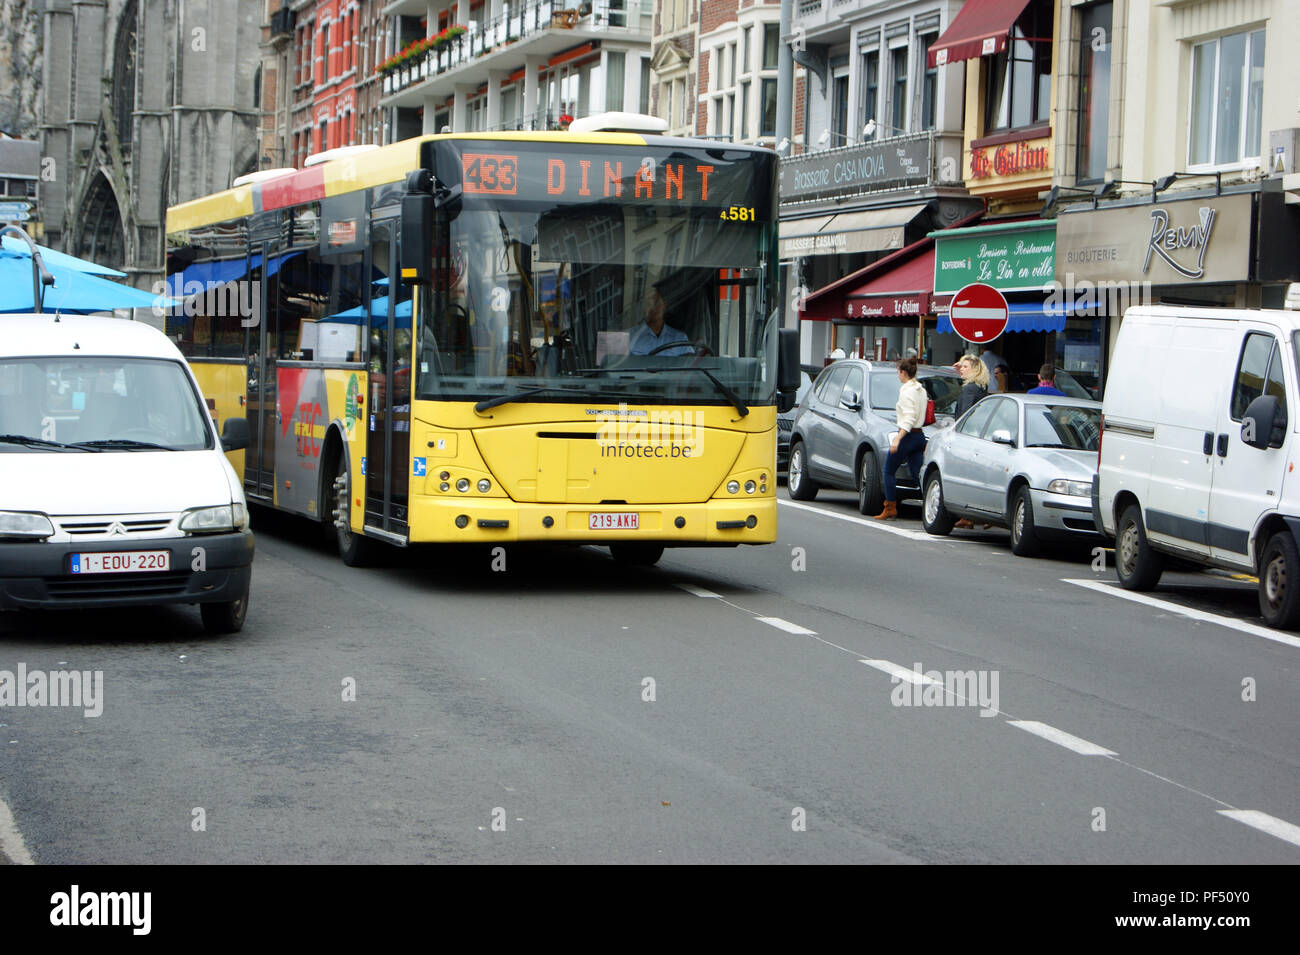 Bus 4,581 a VDL Jonckeere of TEC in dinant,Belgium Stock Photo